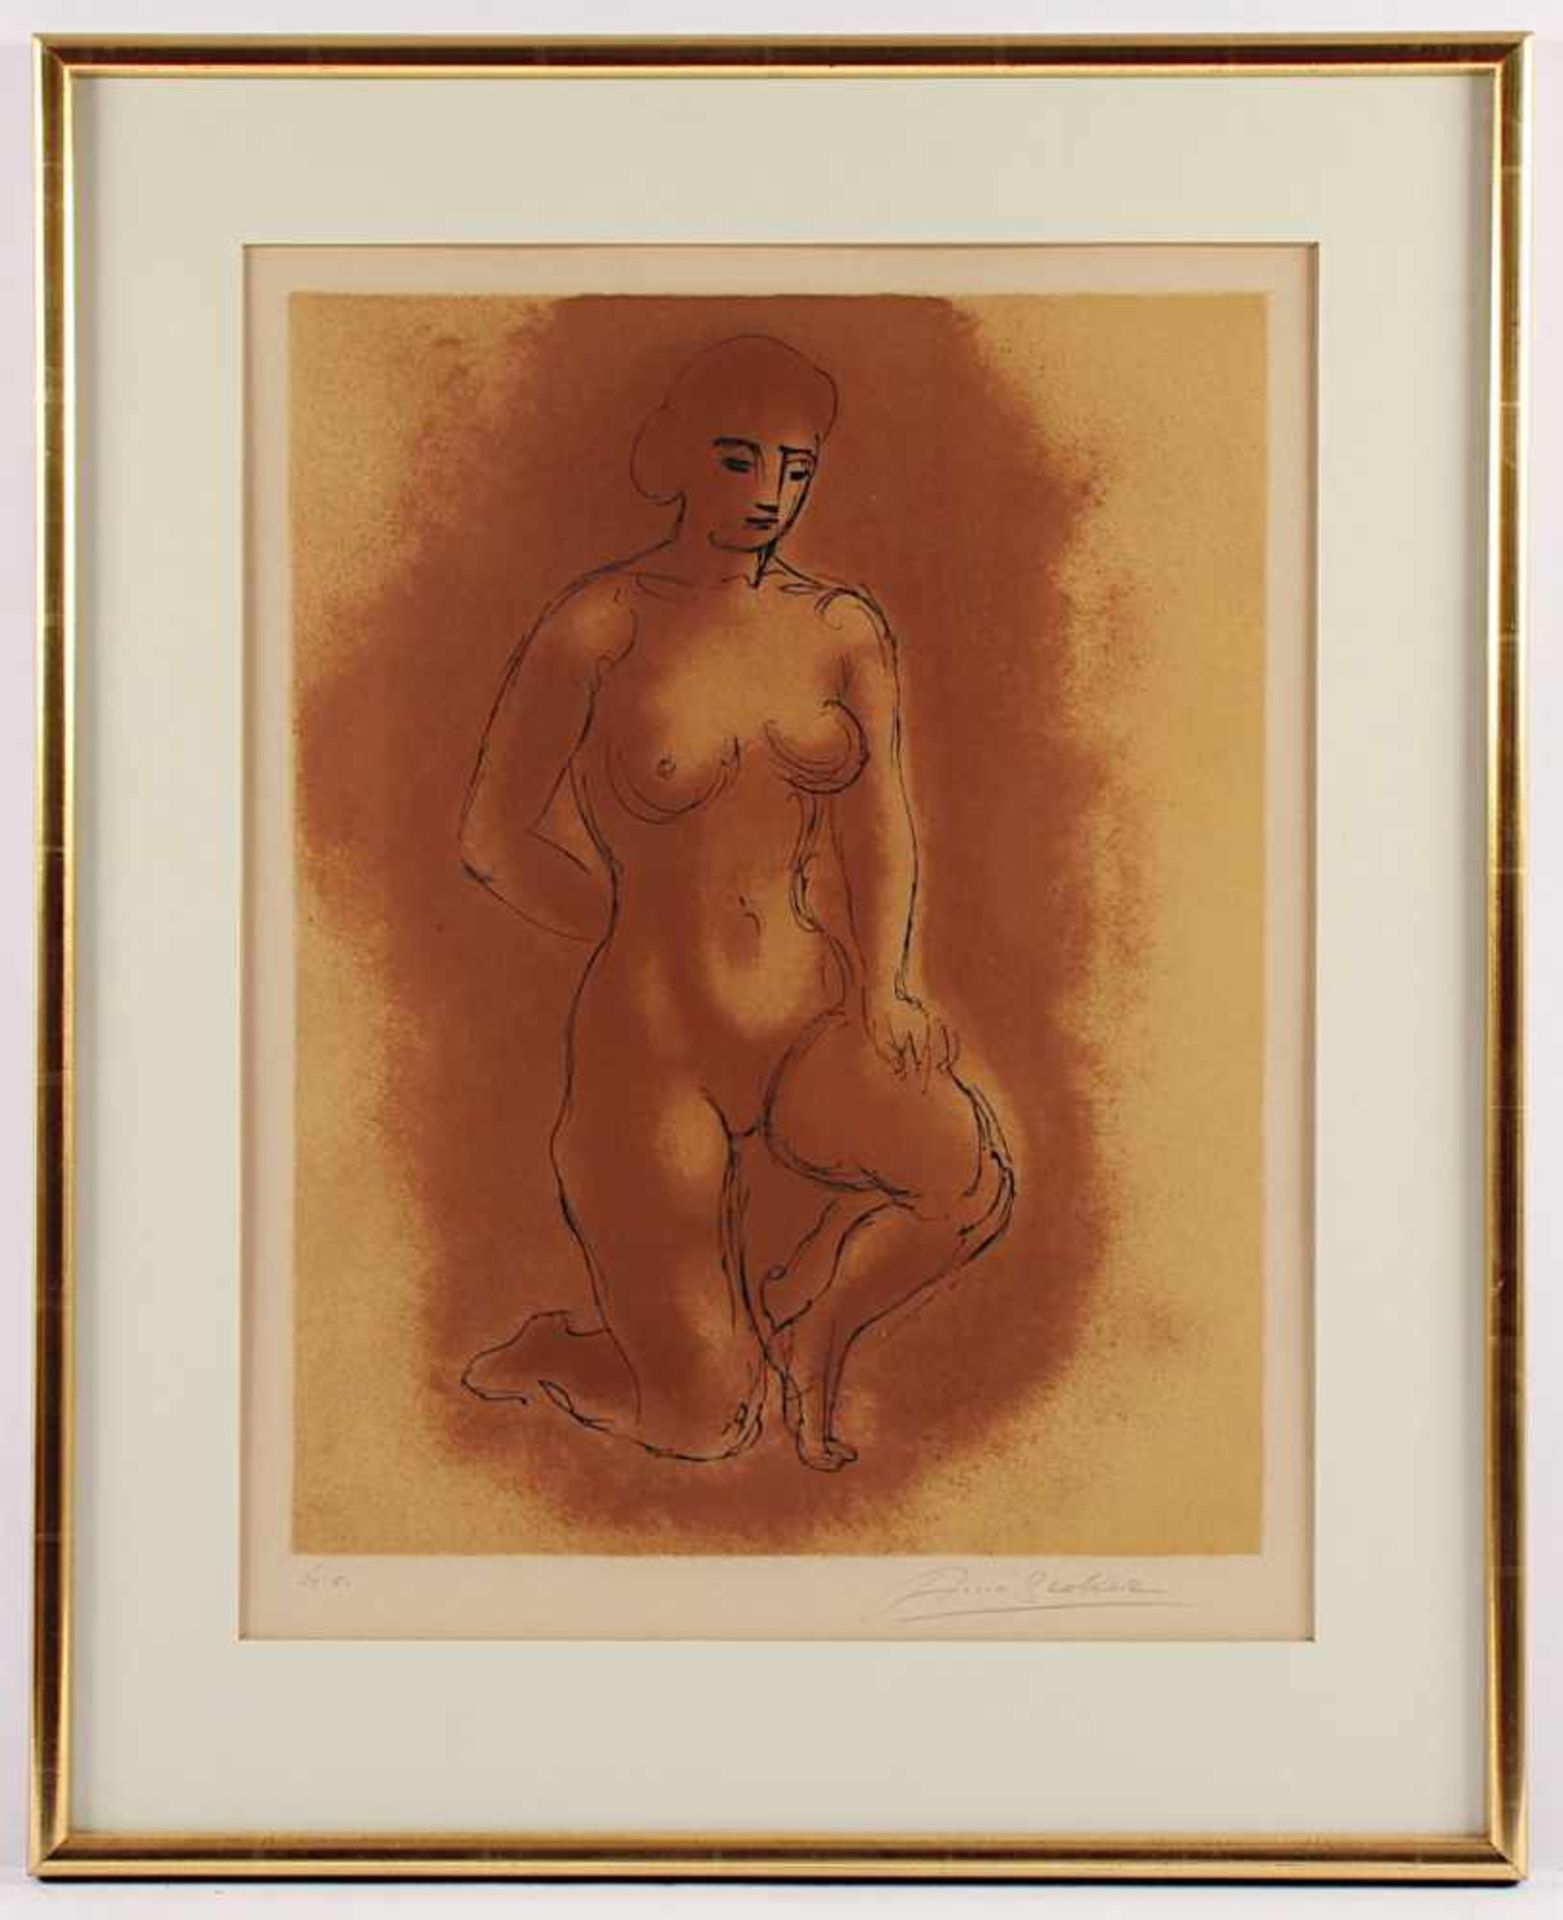 BREKER, Arno, "Frauenakt", Original-Farblithografie, 48 x 37, bez. H.C., handsigniert, läs., R.